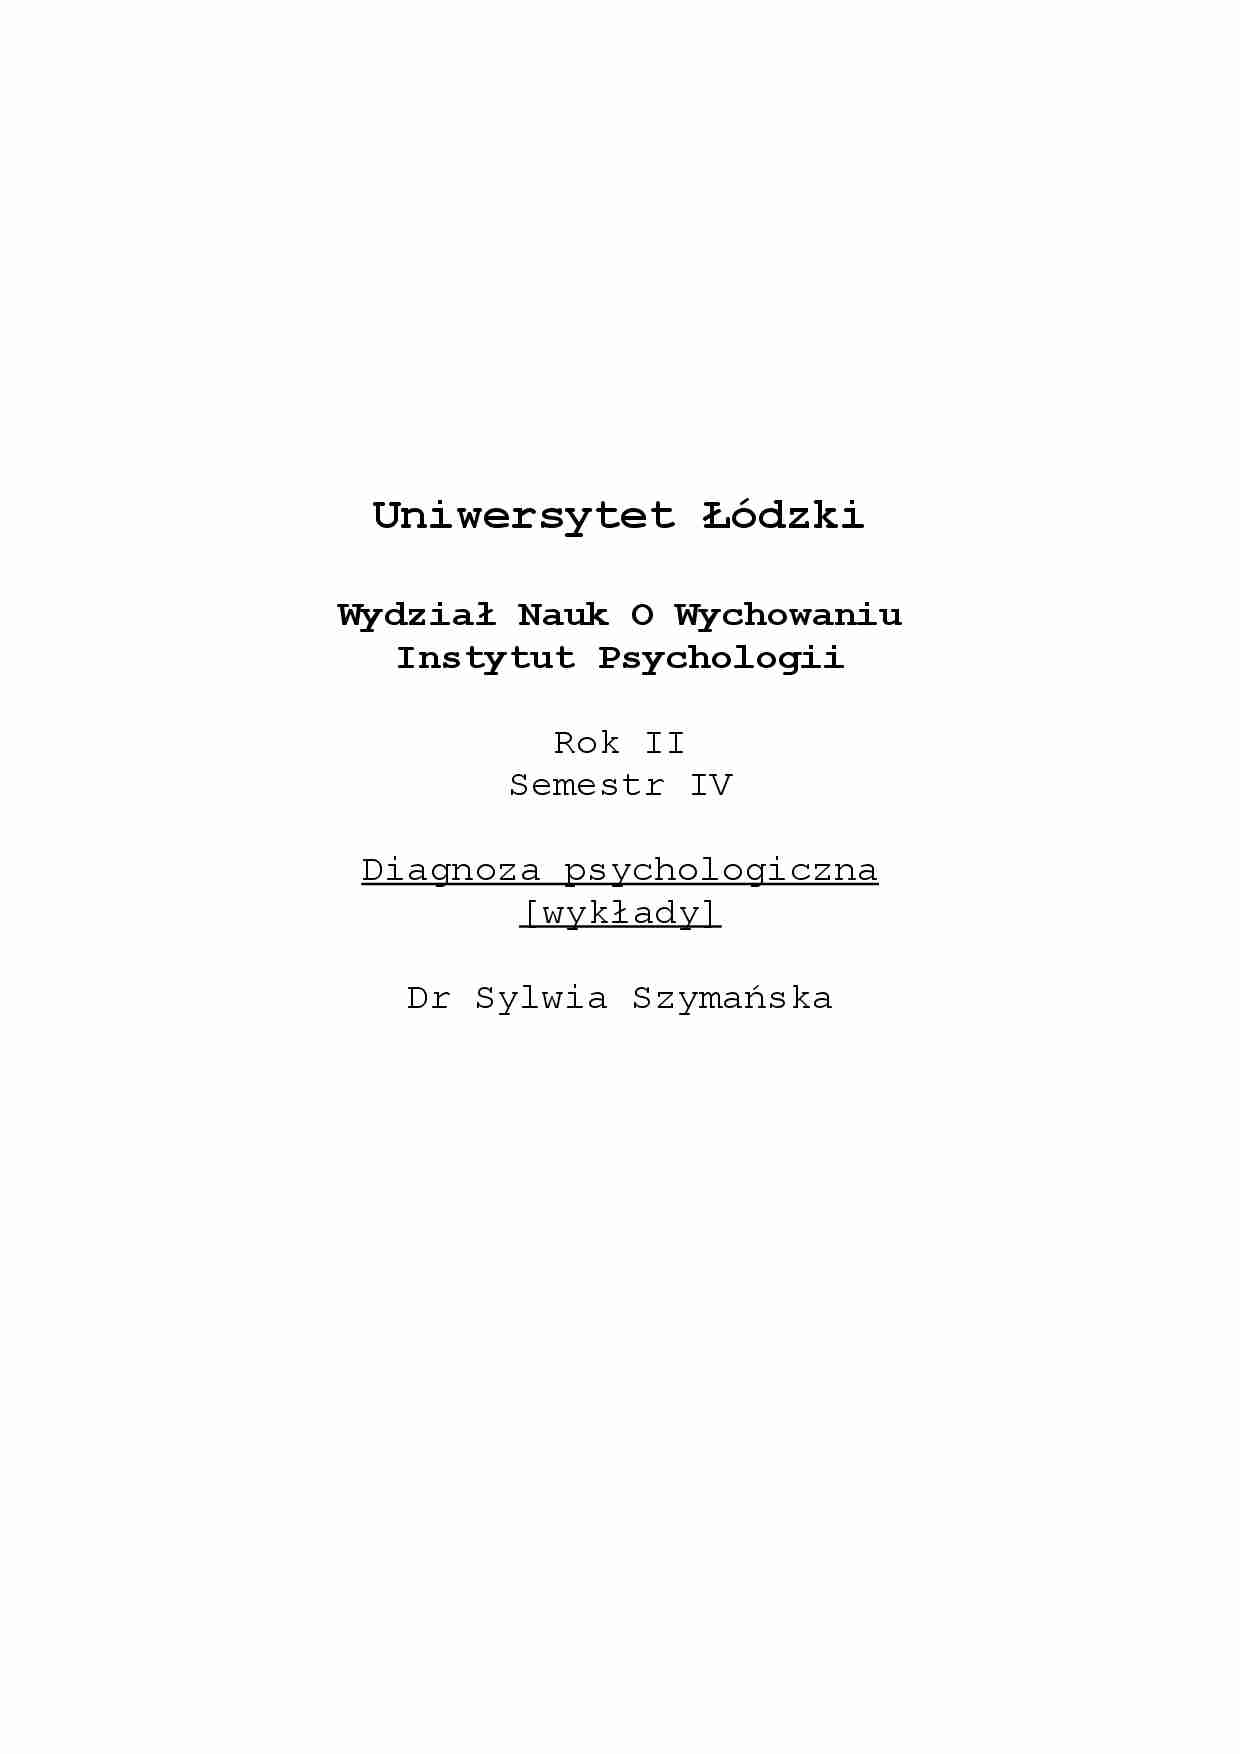 Diagnoza psychologiczna-wykłady - strona 1